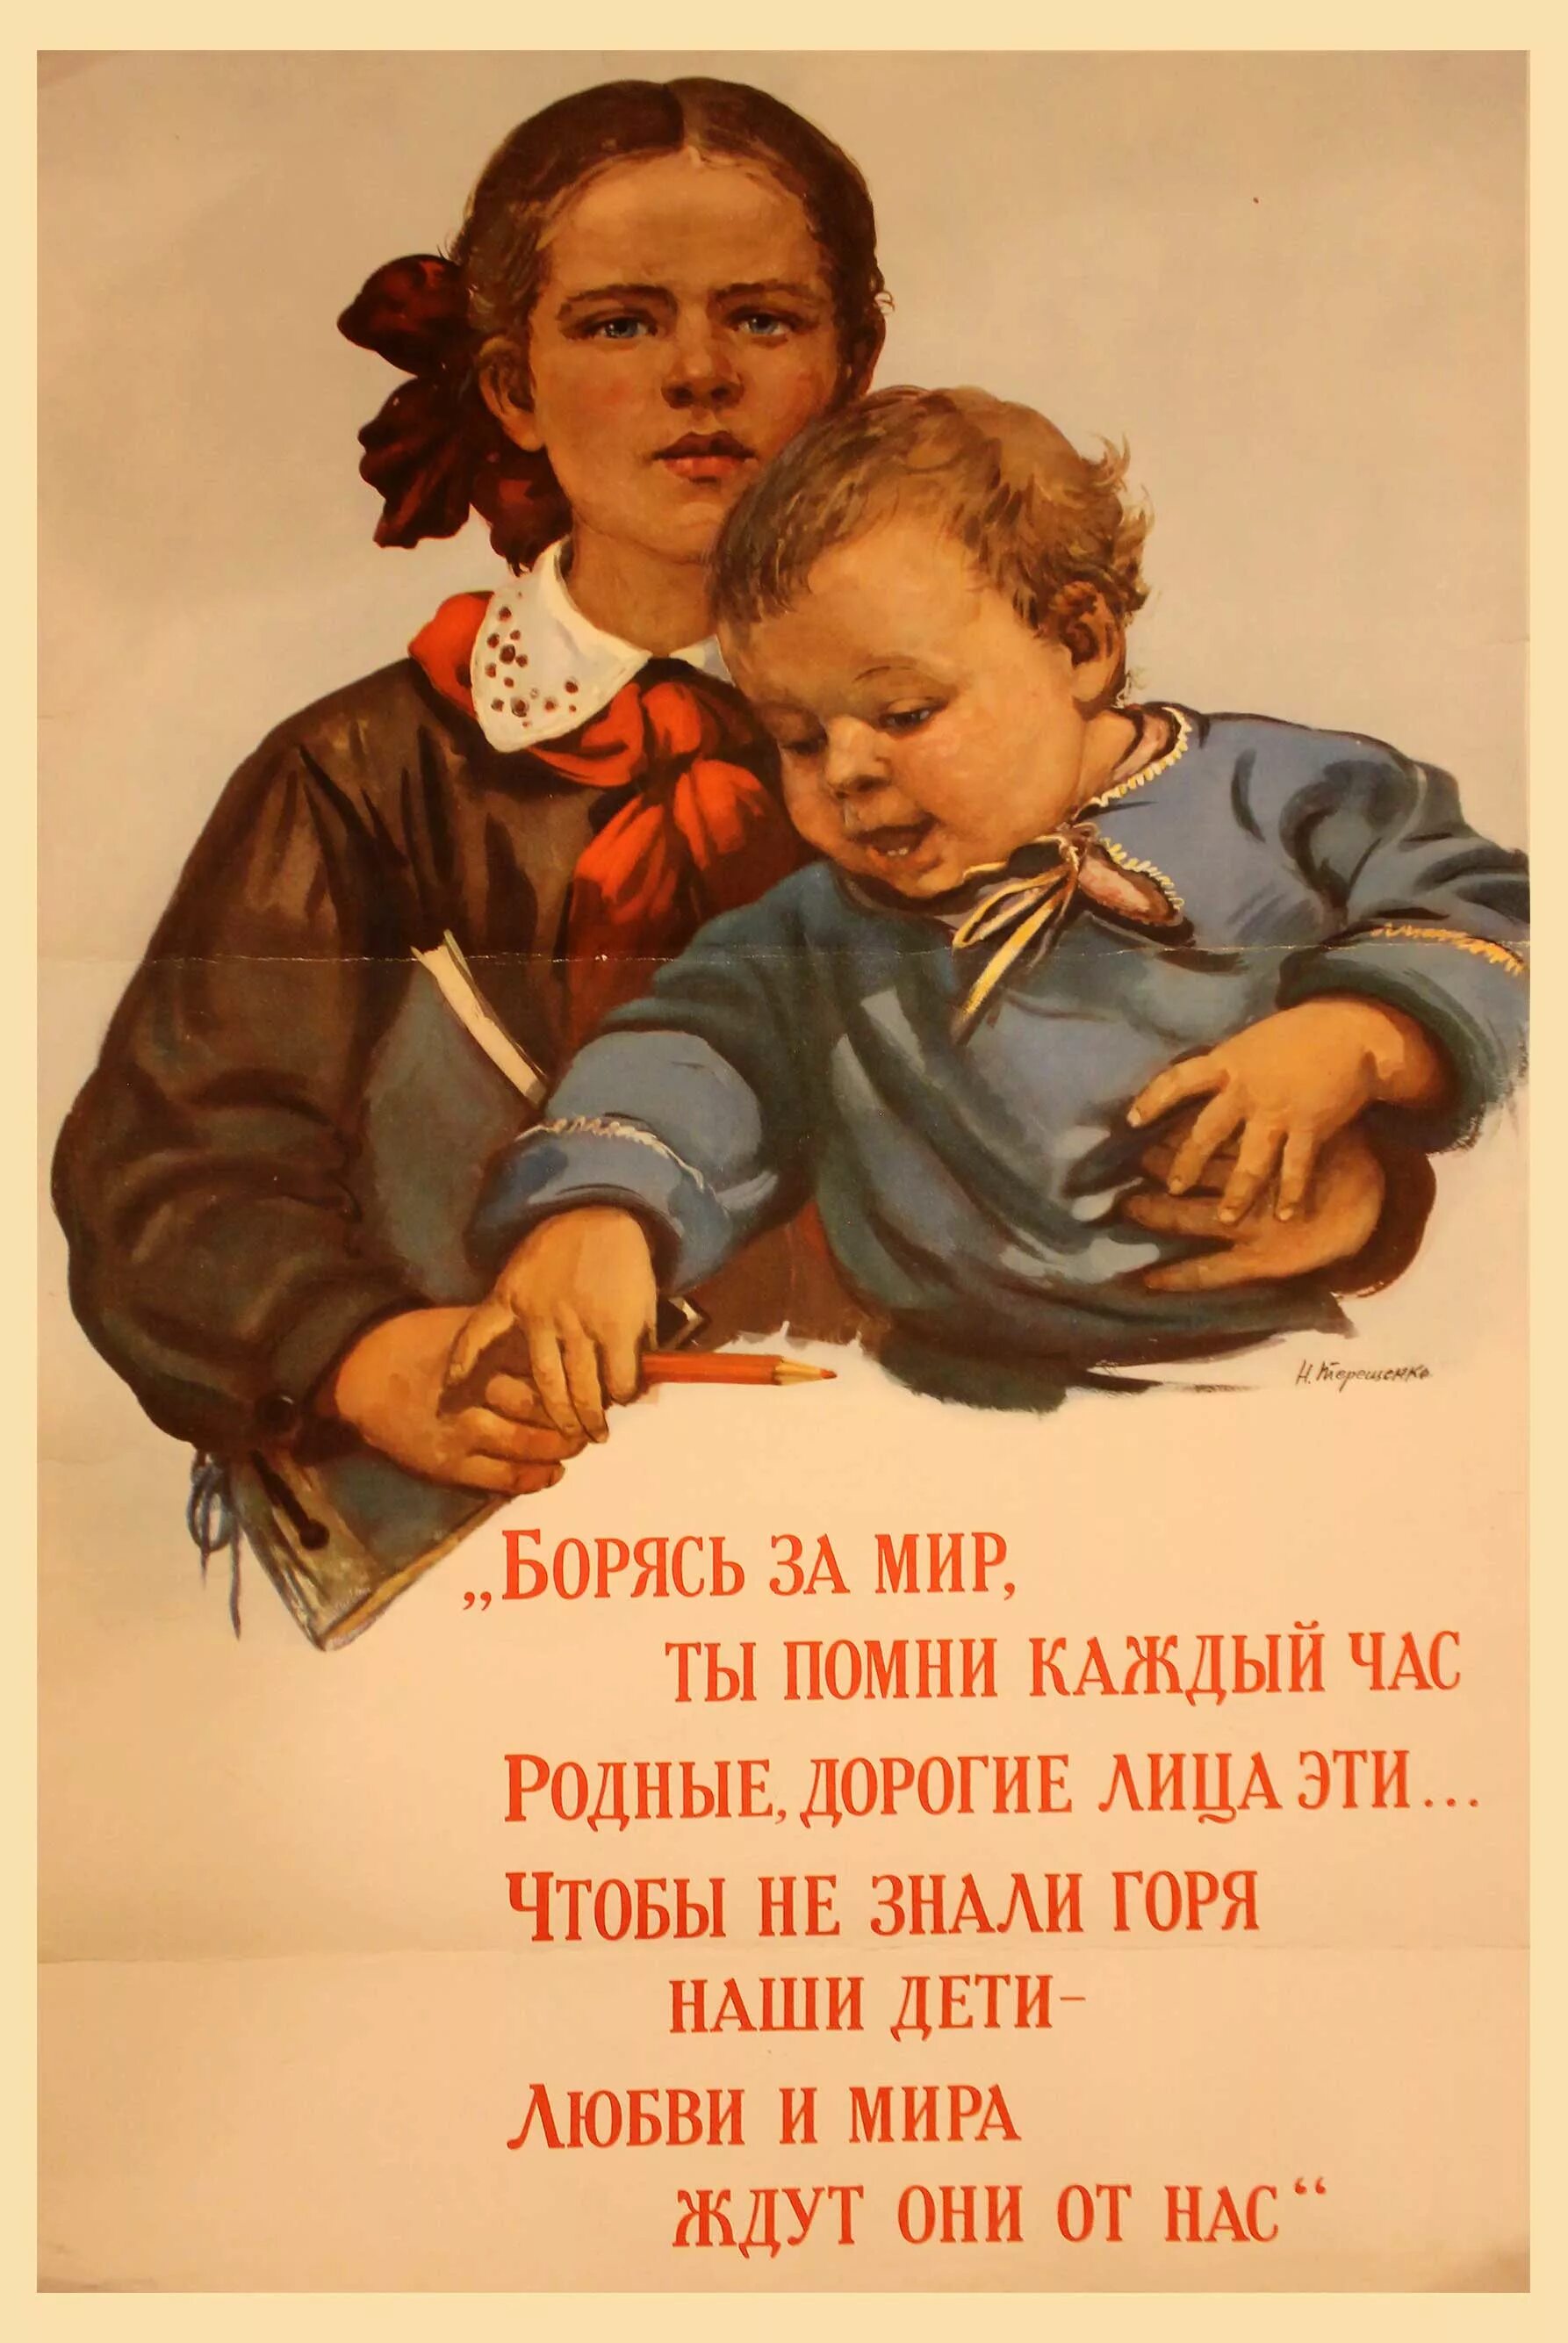 Человек не знающий горя. Терещенко плакаты. Плакат о любви к детям. Советский плакат борись за мир. Советские плакаты за любовь и мир.